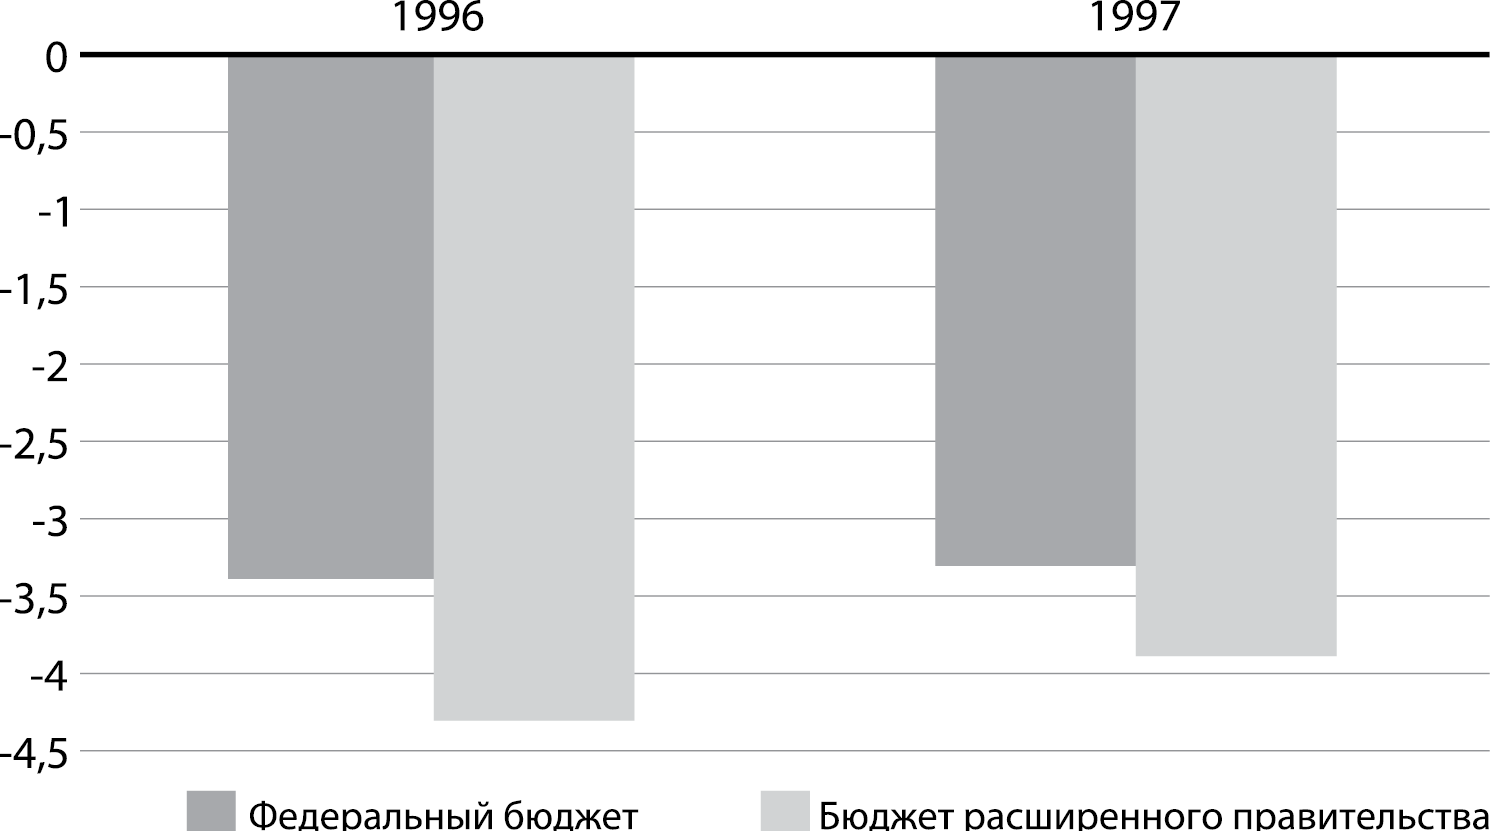 Дефицит федерального бюджета России 1996 - 1997 г.г.